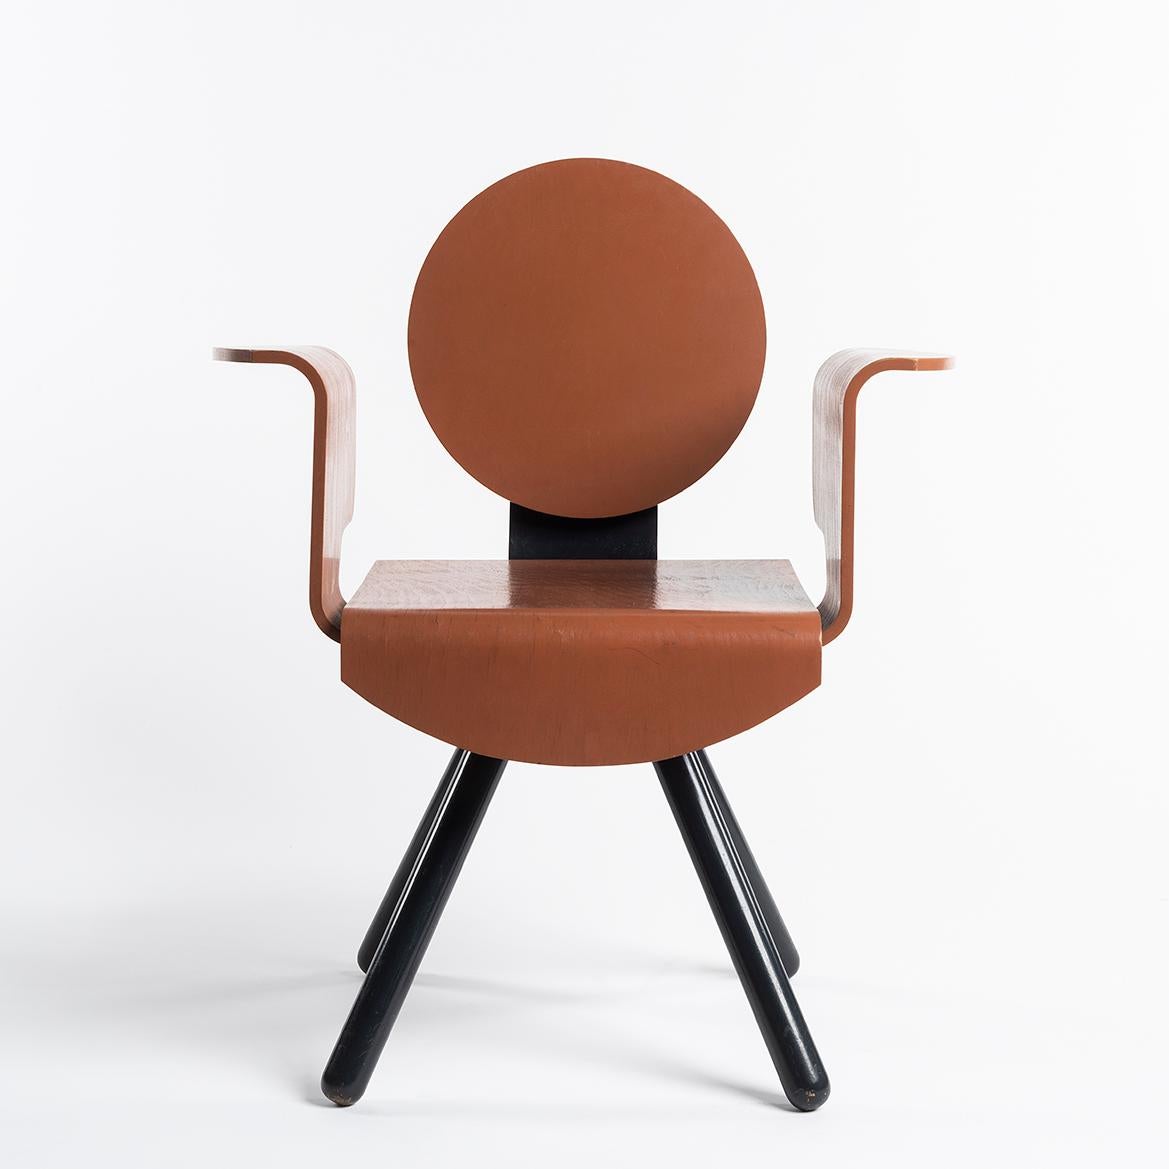 Dieser Stuhl wurde von Shigeru Uchida für das Hotel Il Palazzo, ein Projekt von Aldo Rossi in Fukuoka, Japan, entworfen.

Das Hotel 